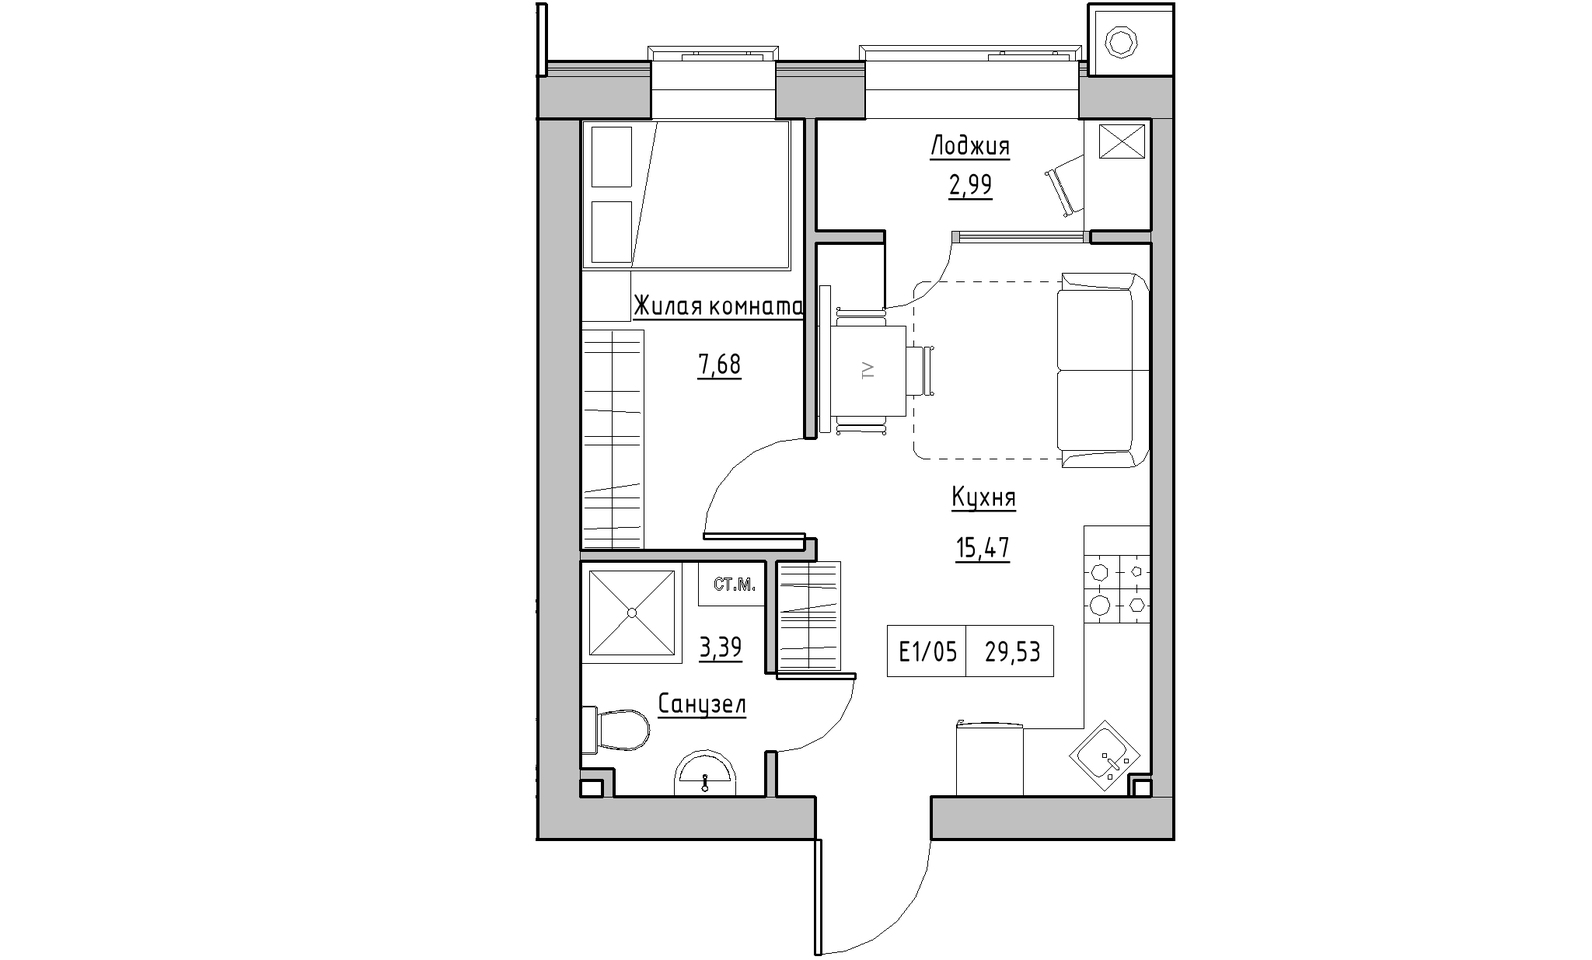 Планування 1-к квартира площею 29.53м2, KS-014-03/0006.